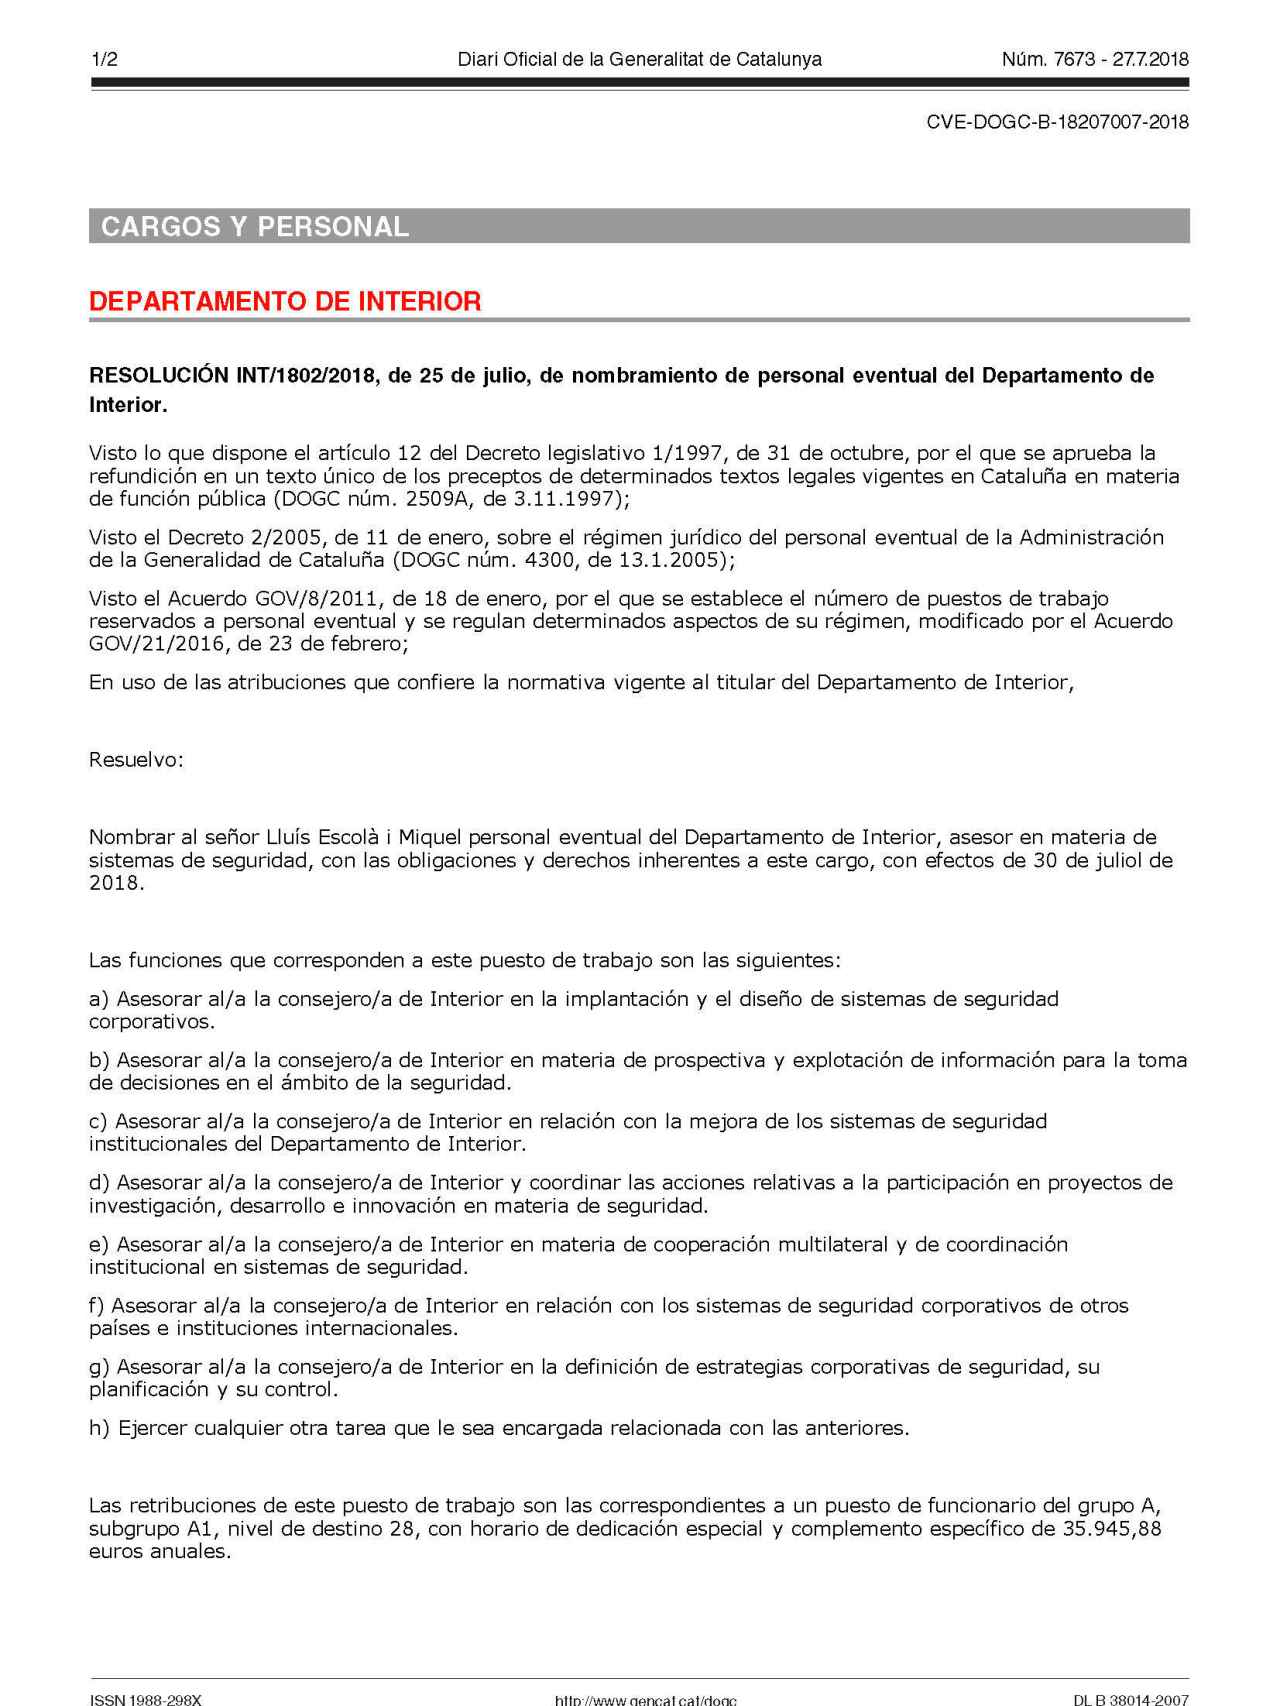 Página del DOGC en la que se detalla la contratación como asesor de Lluís Escolà, sus funciones y su remuneración.